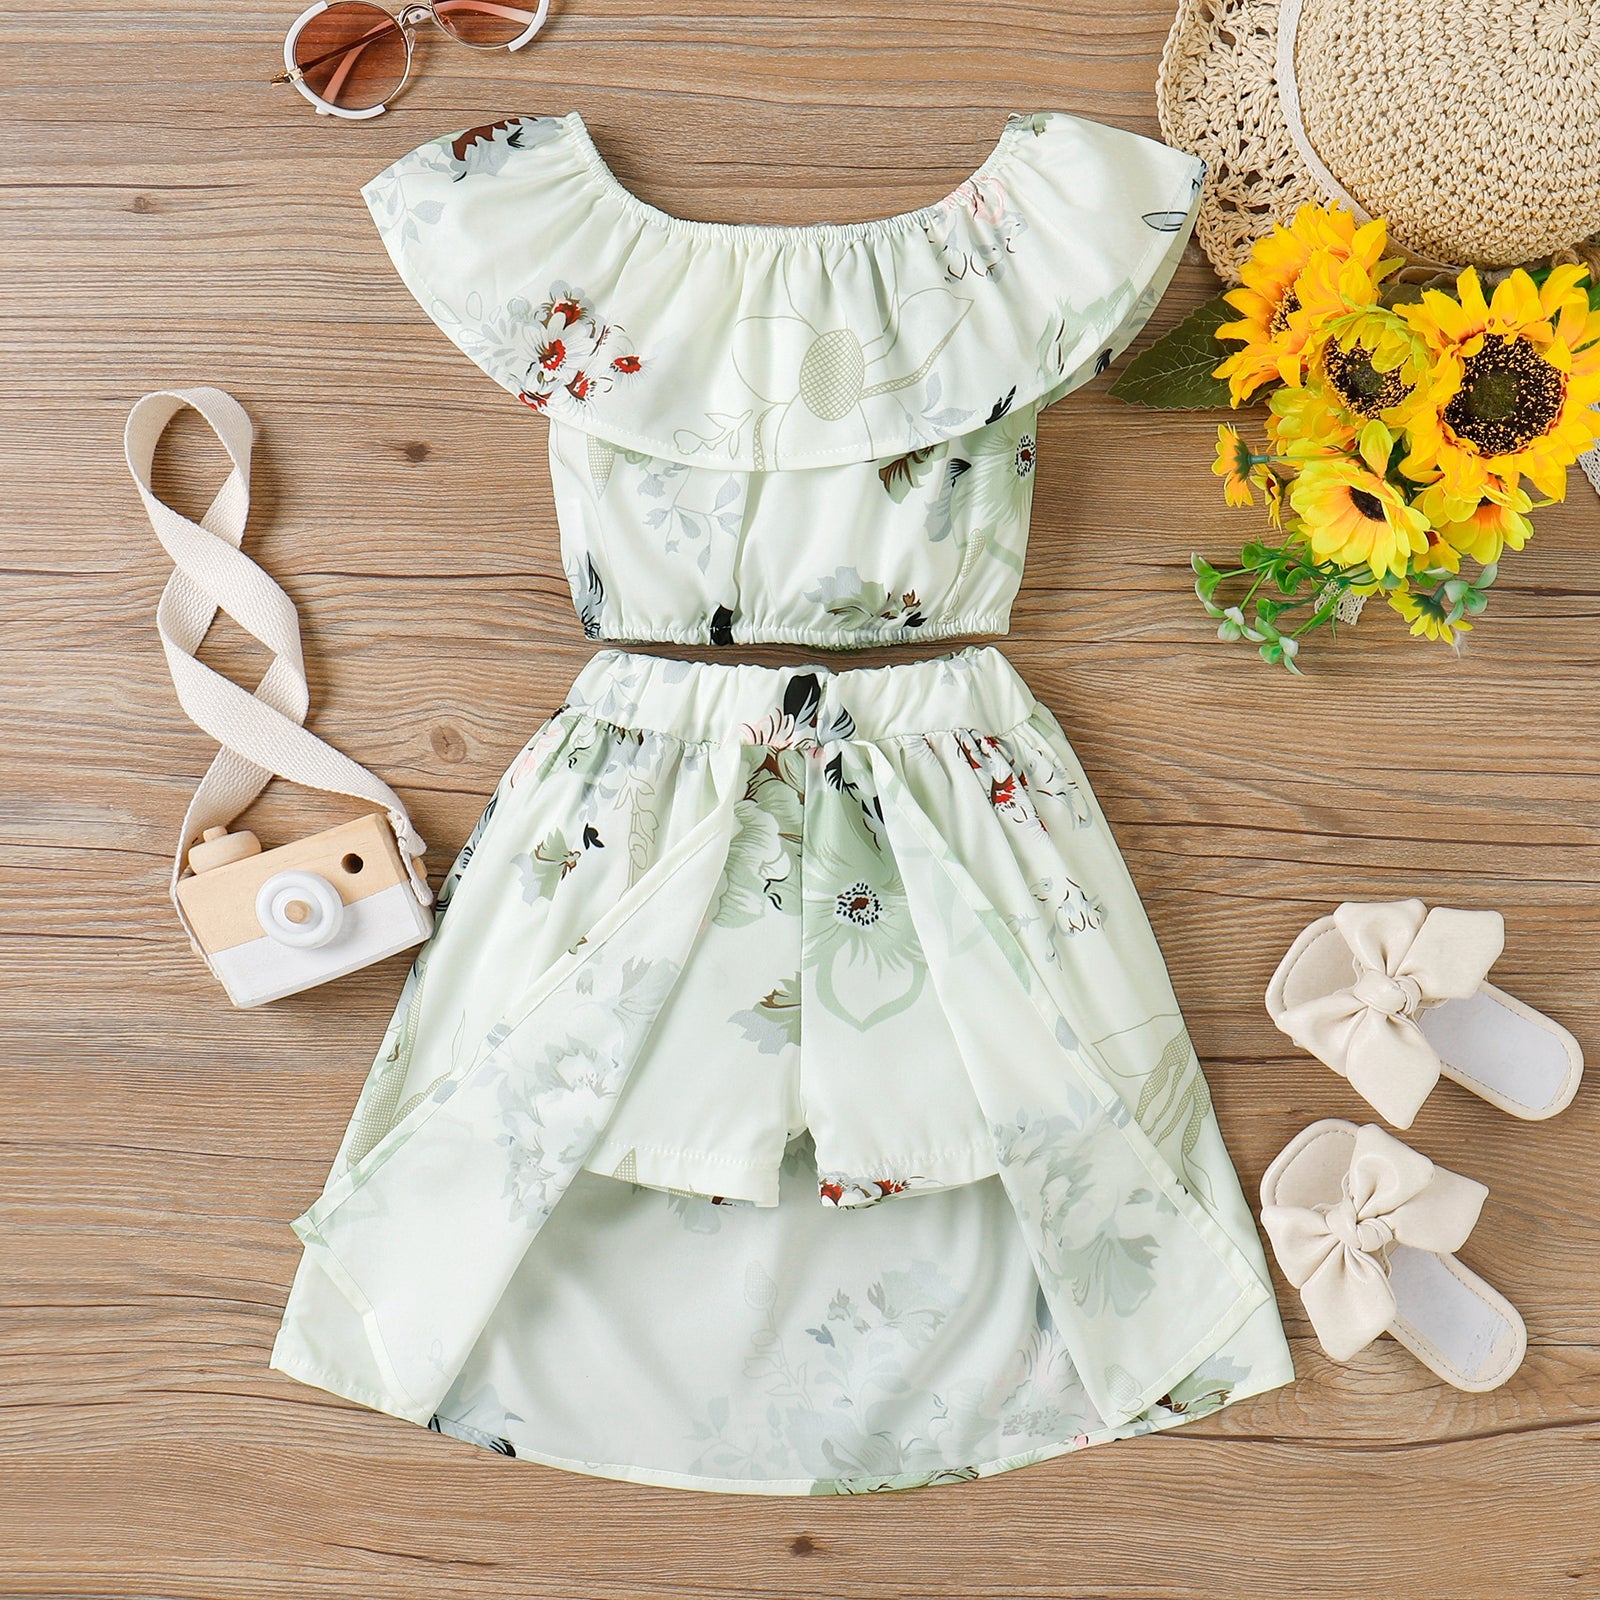 Toddler Girl Floral Dress.